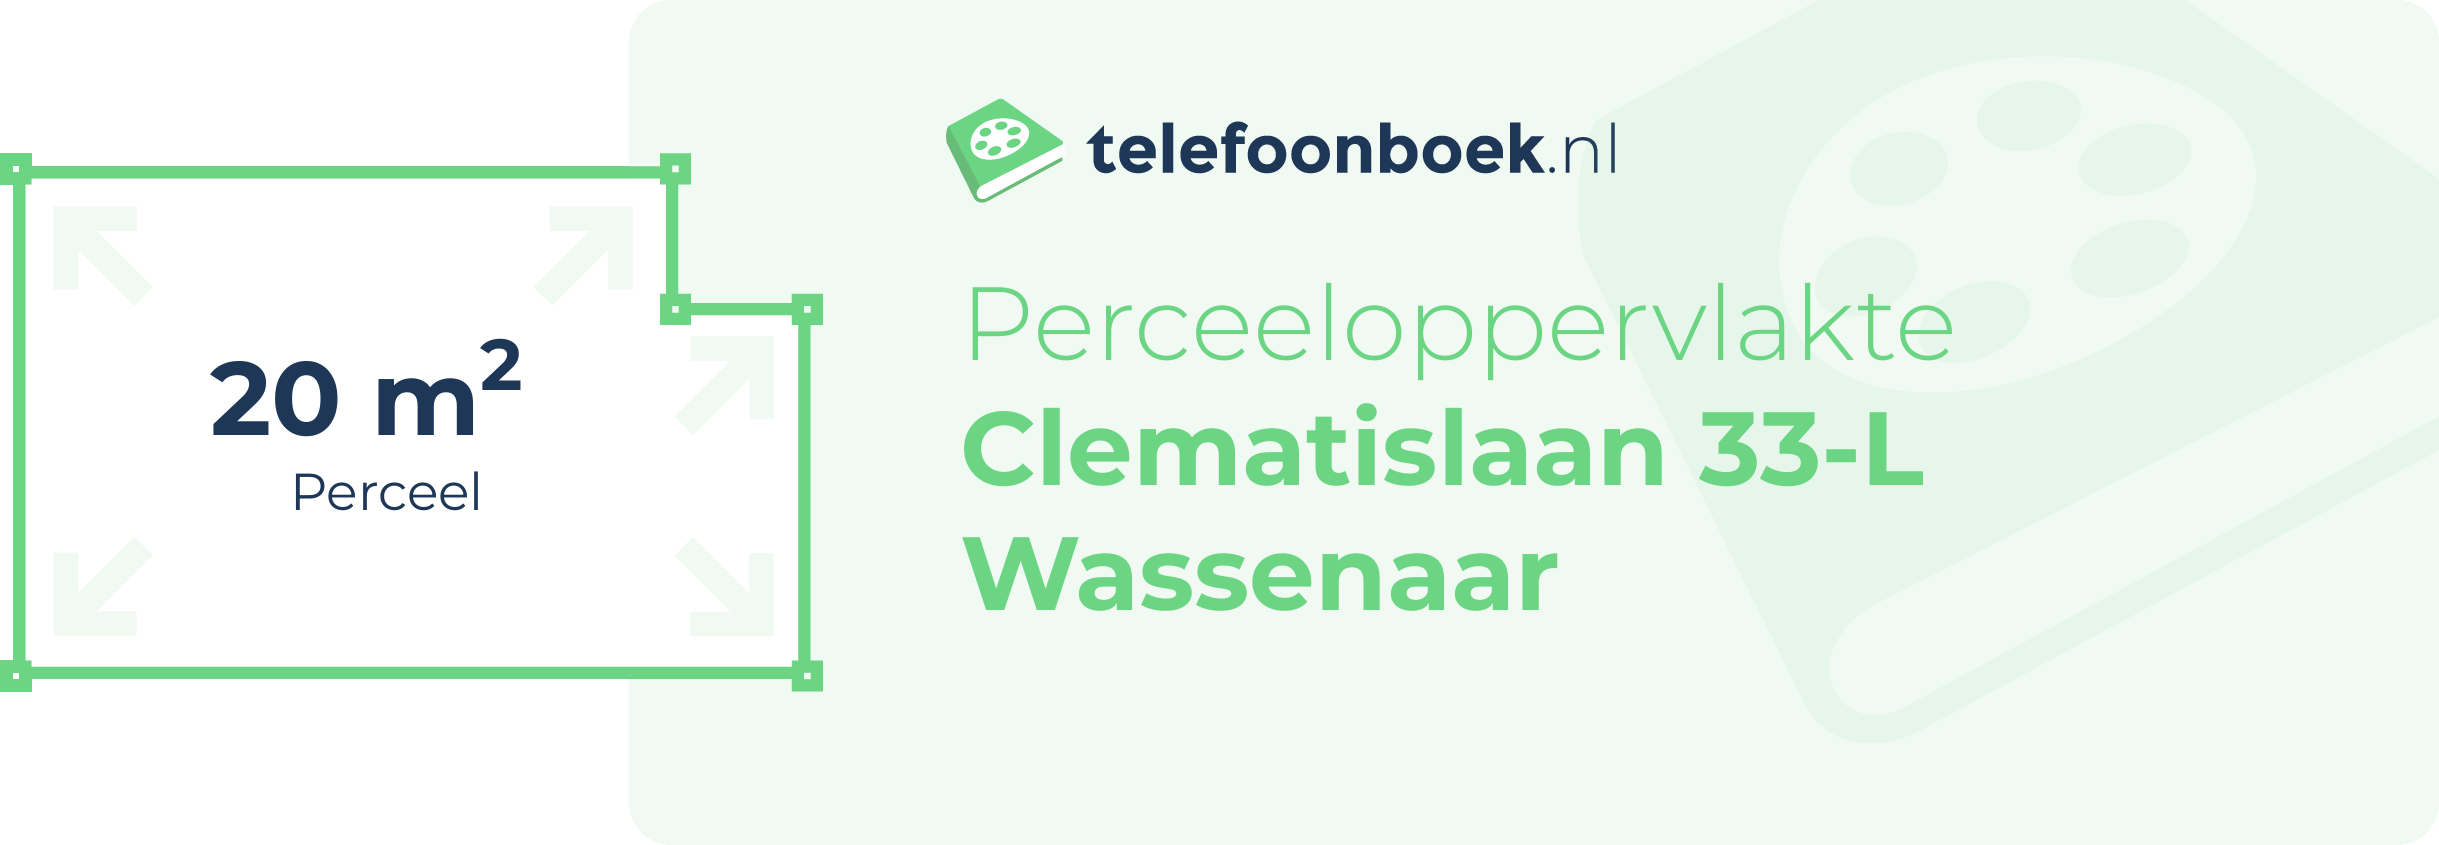 Perceeloppervlakte Clematislaan 33-L Wassenaar